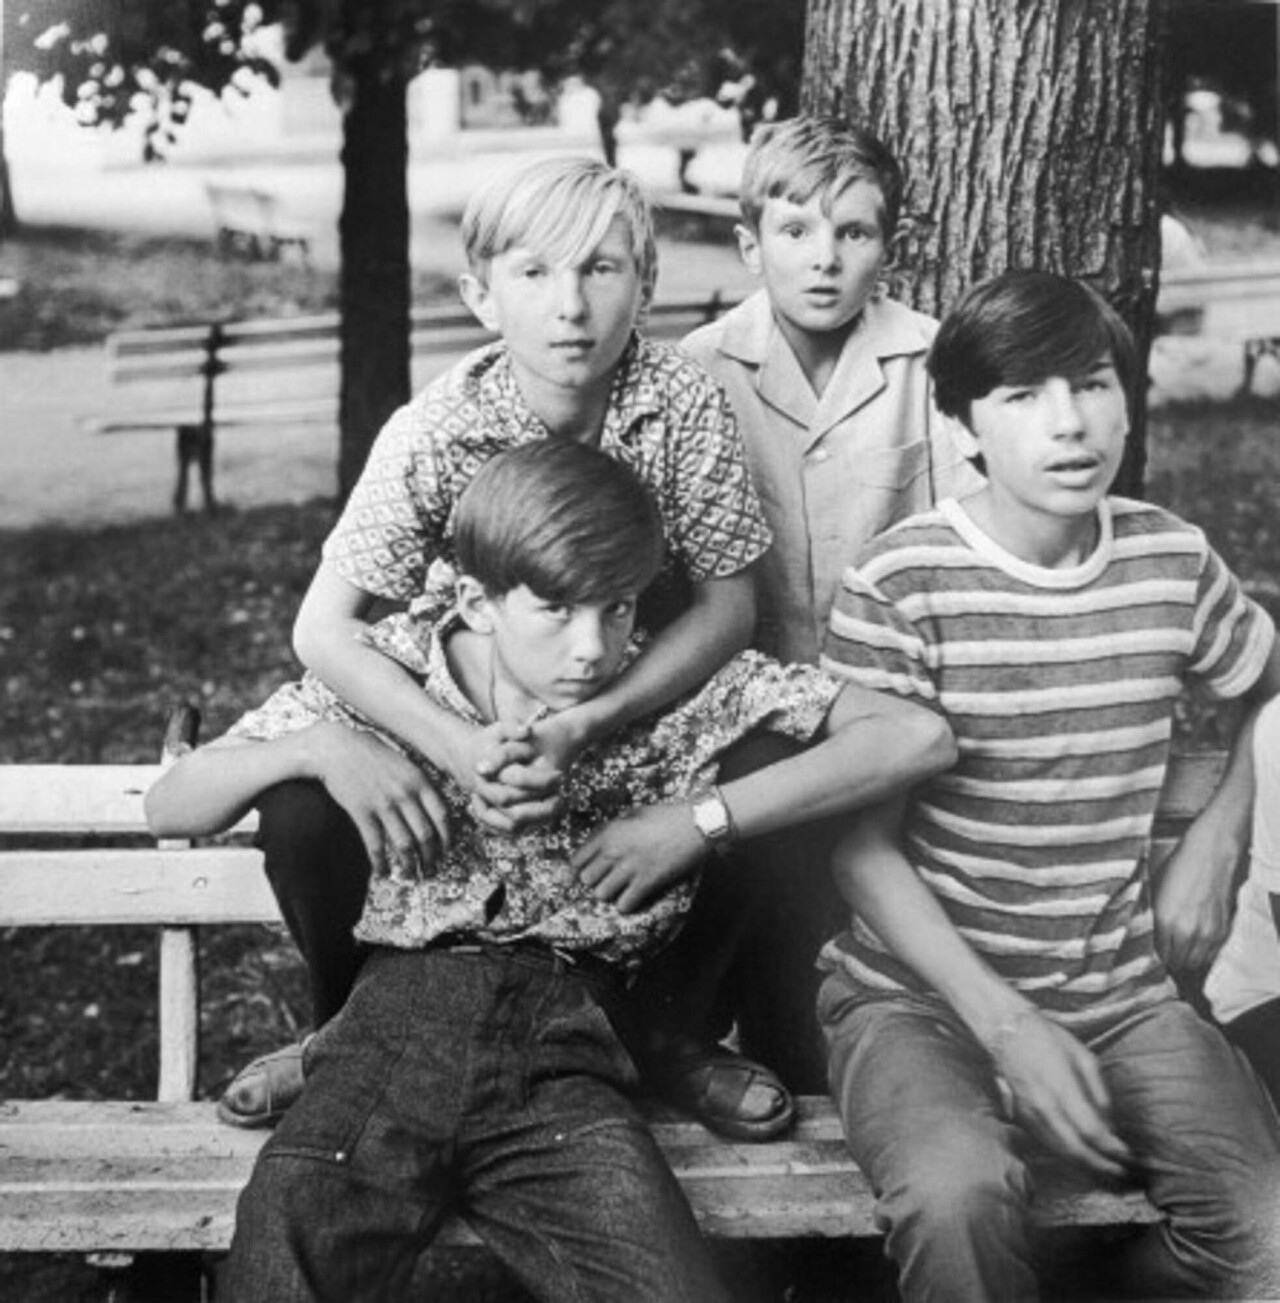 Мальчики в Серекиском парке, 1974 год, фотограф Антанас Суткус